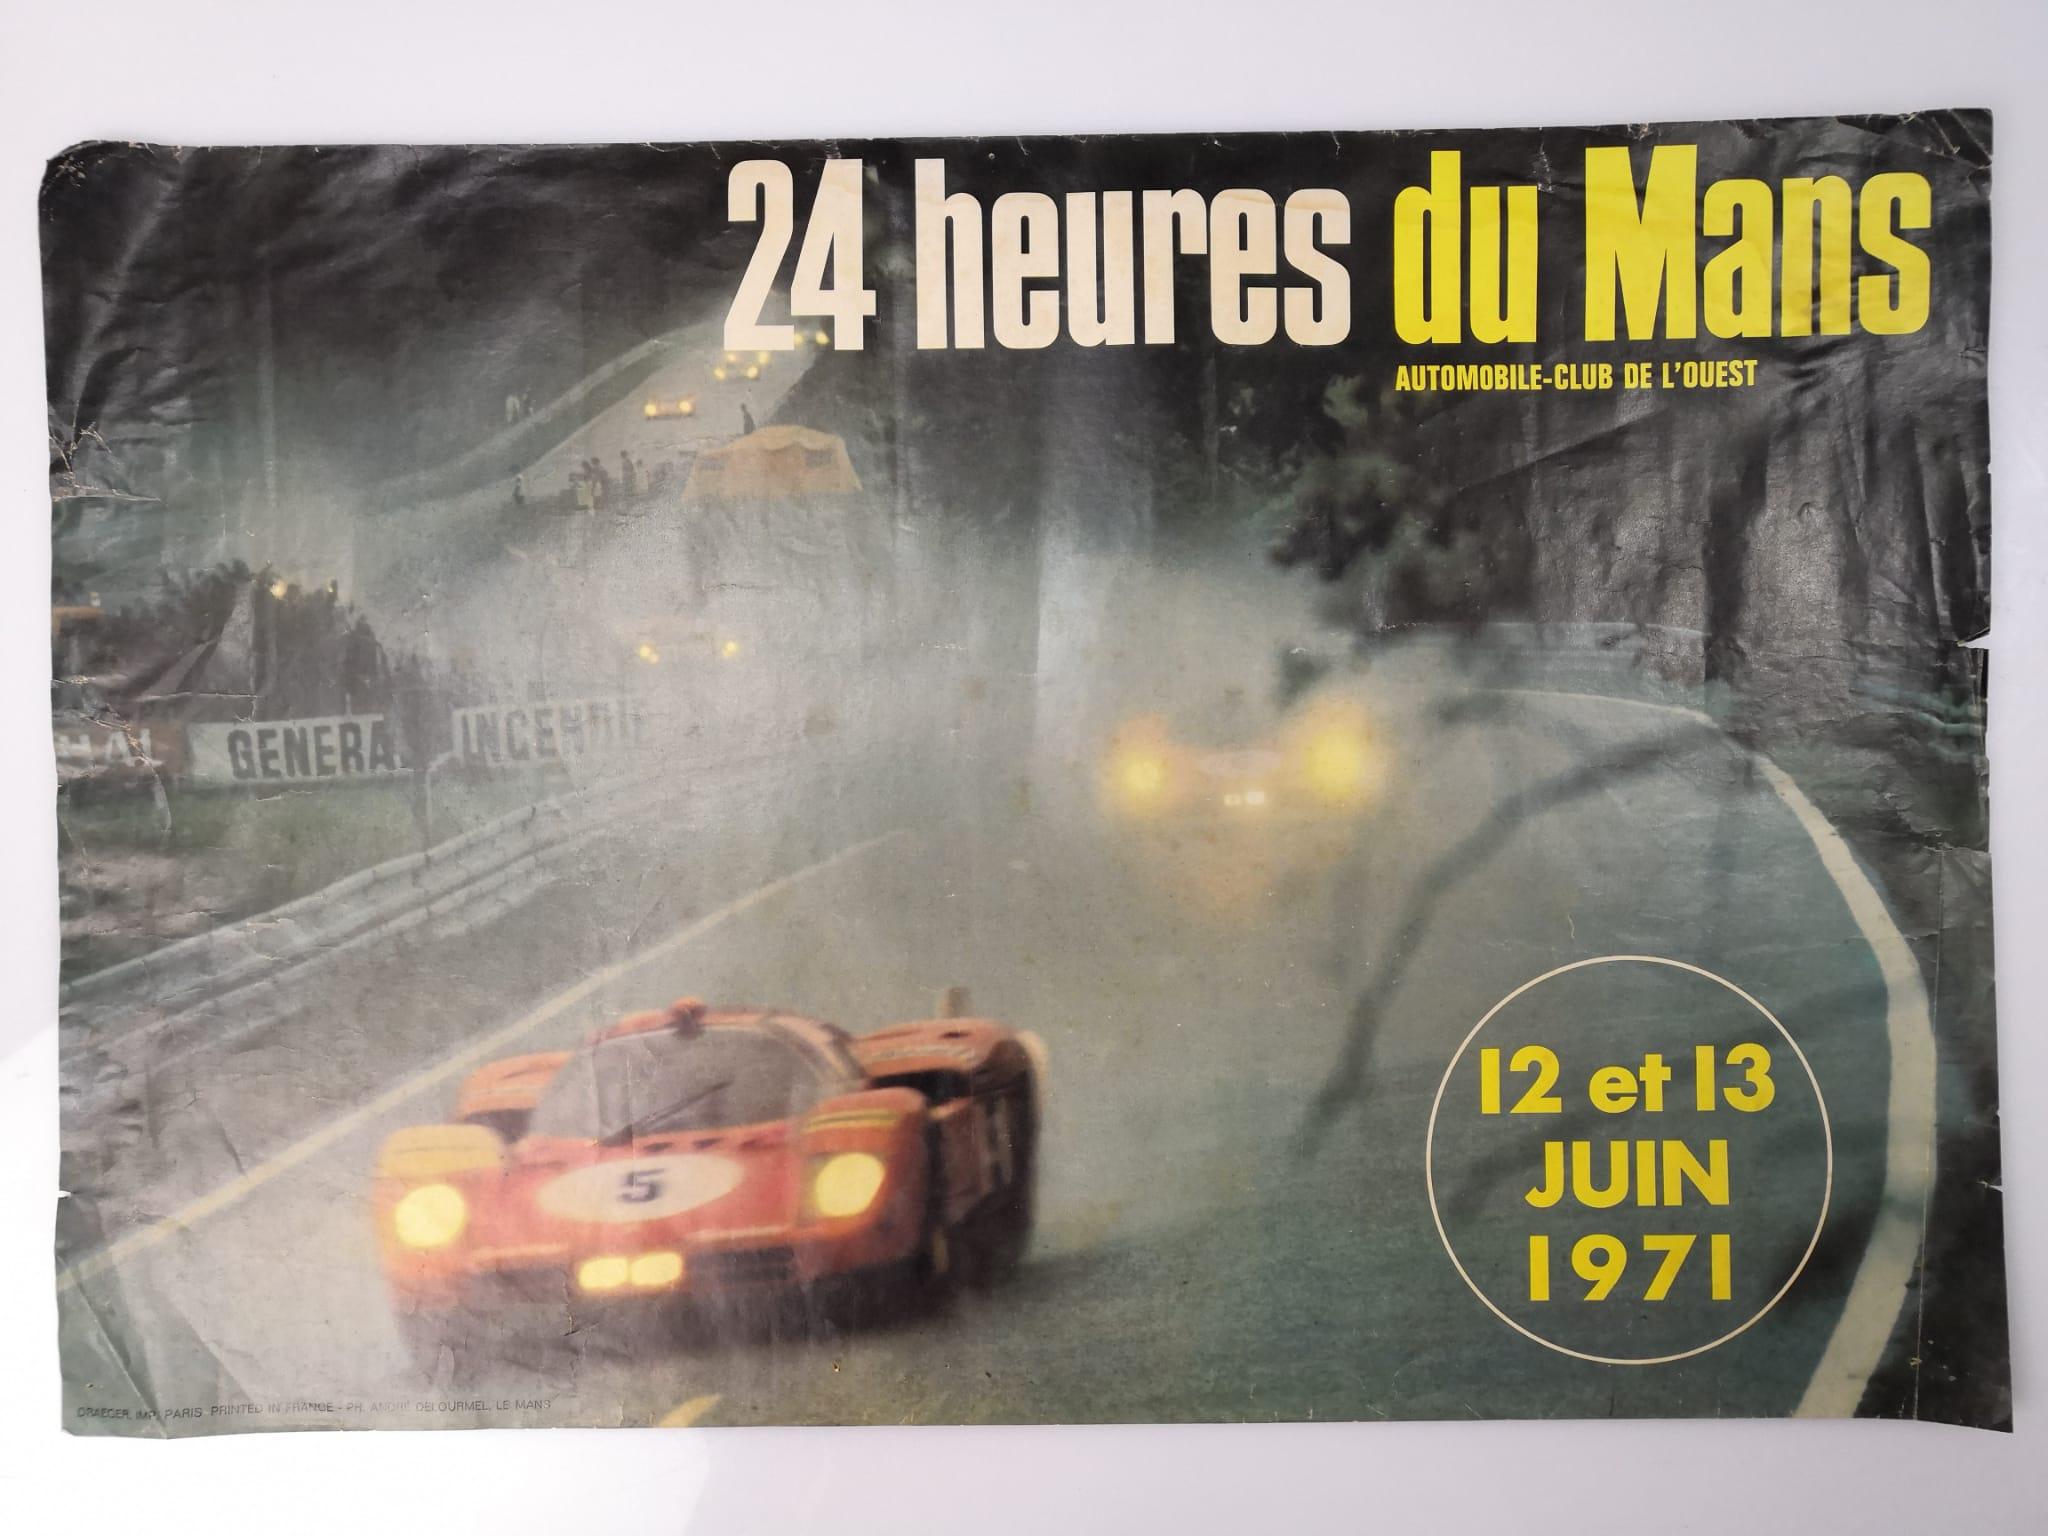 Fantastique affiche originale du milieu du siècle réalisée par le photographe Andre Delourmel pour la légendaire course des 24 heures du Mans de 1971, qui s'est tenue les 12 et 13 juin. Un vrai bijou !